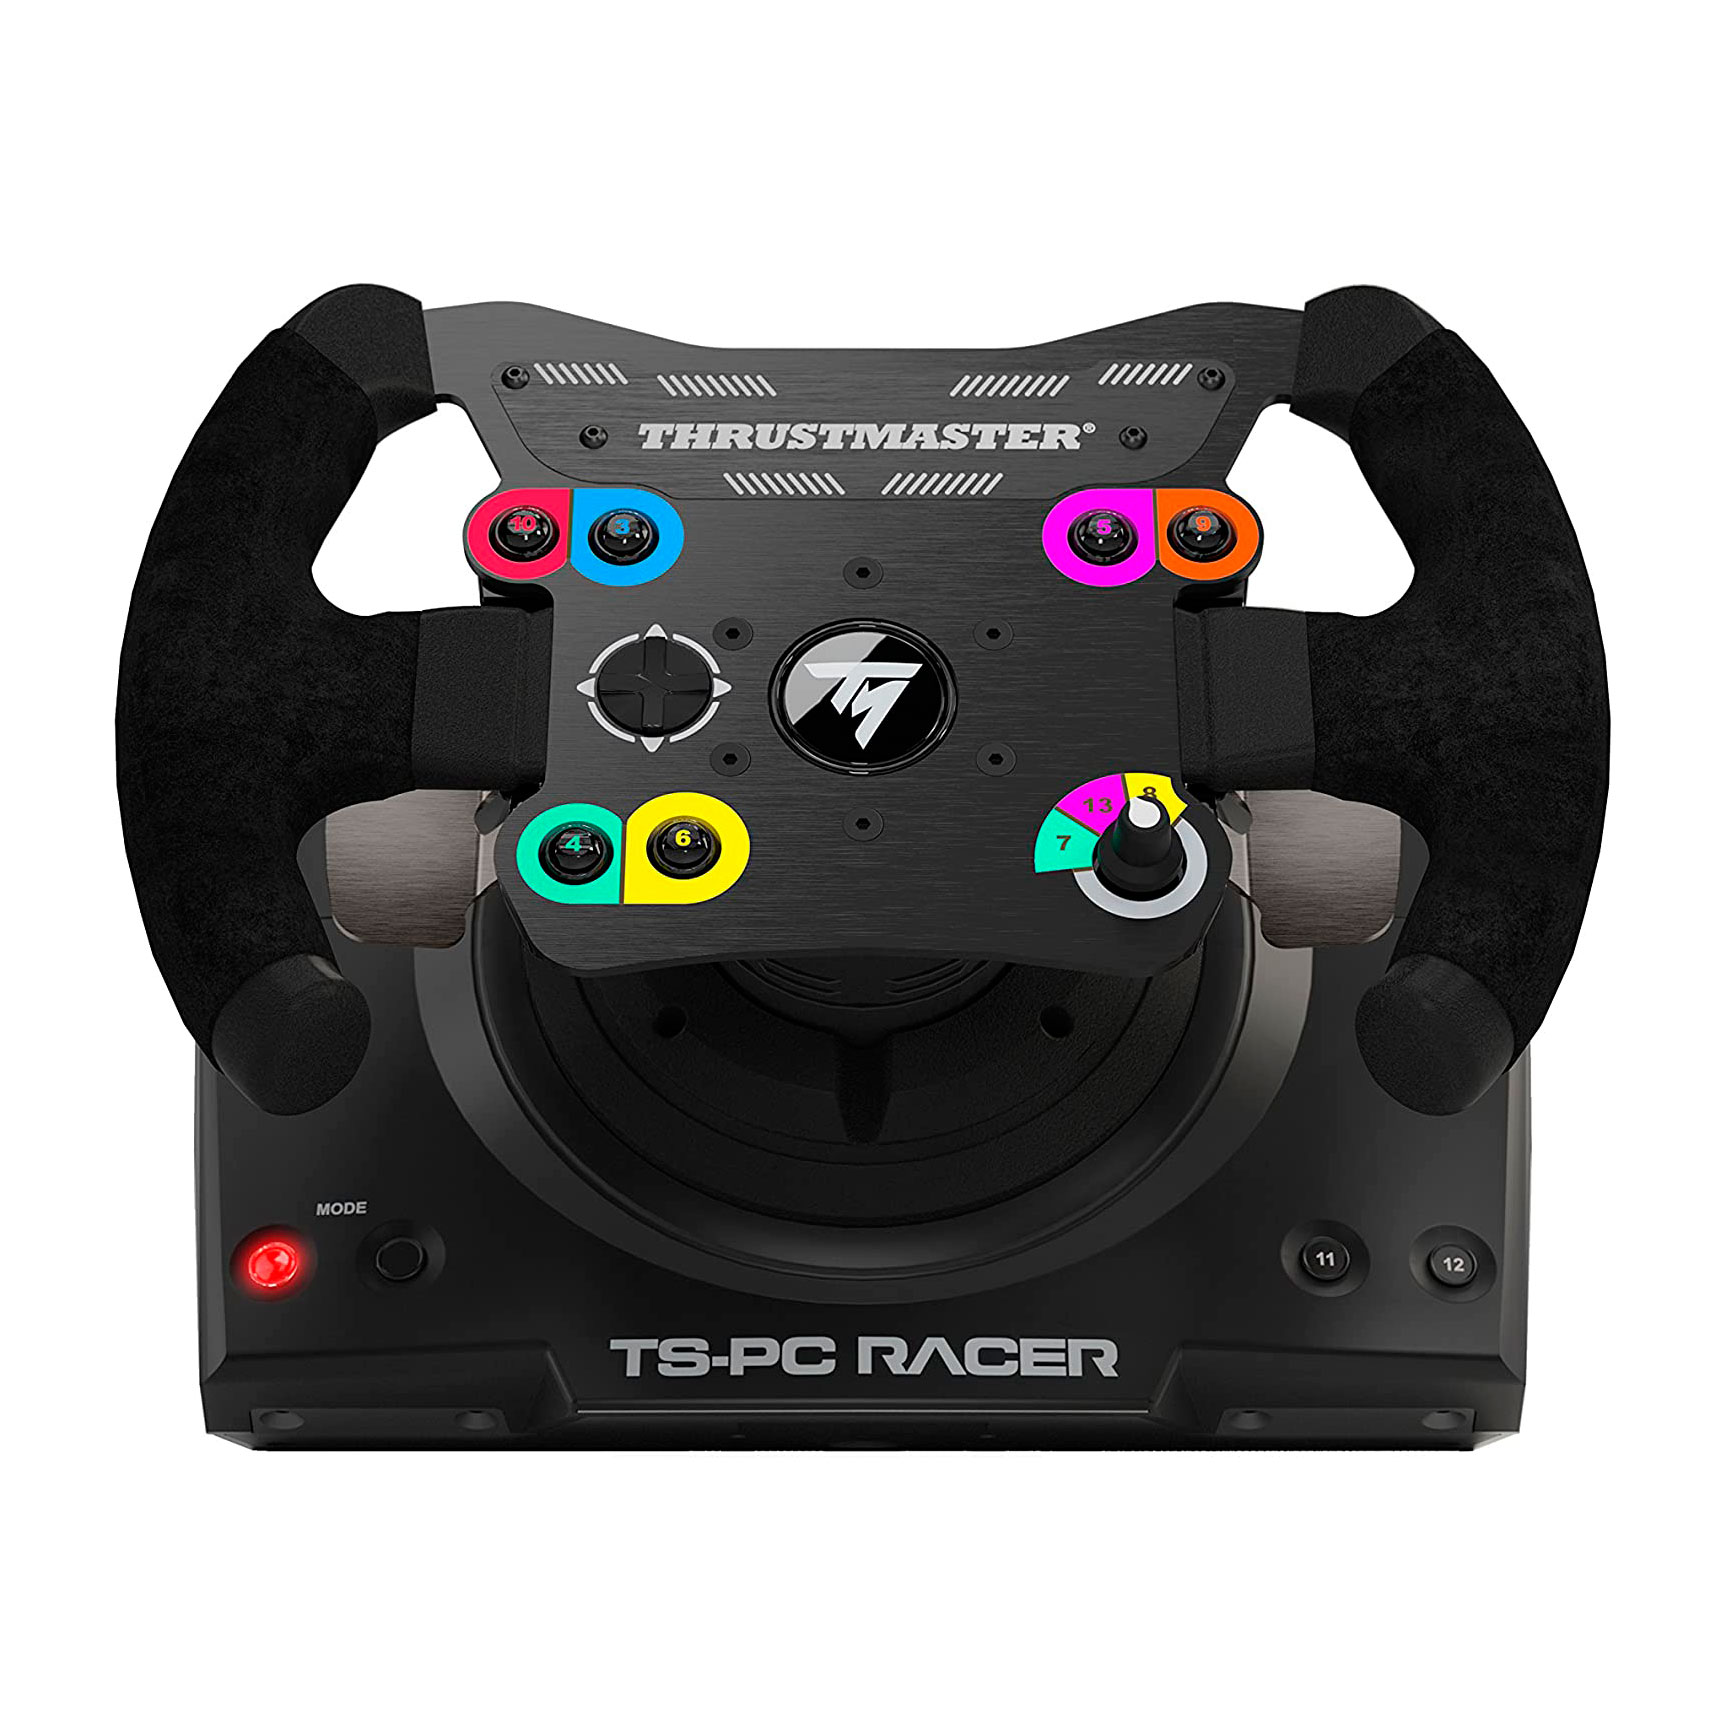 Руль Thrustmaster TS-PC Racer, черный руль thrustmaster ts pc racer ferrari 488 challenge edition черный